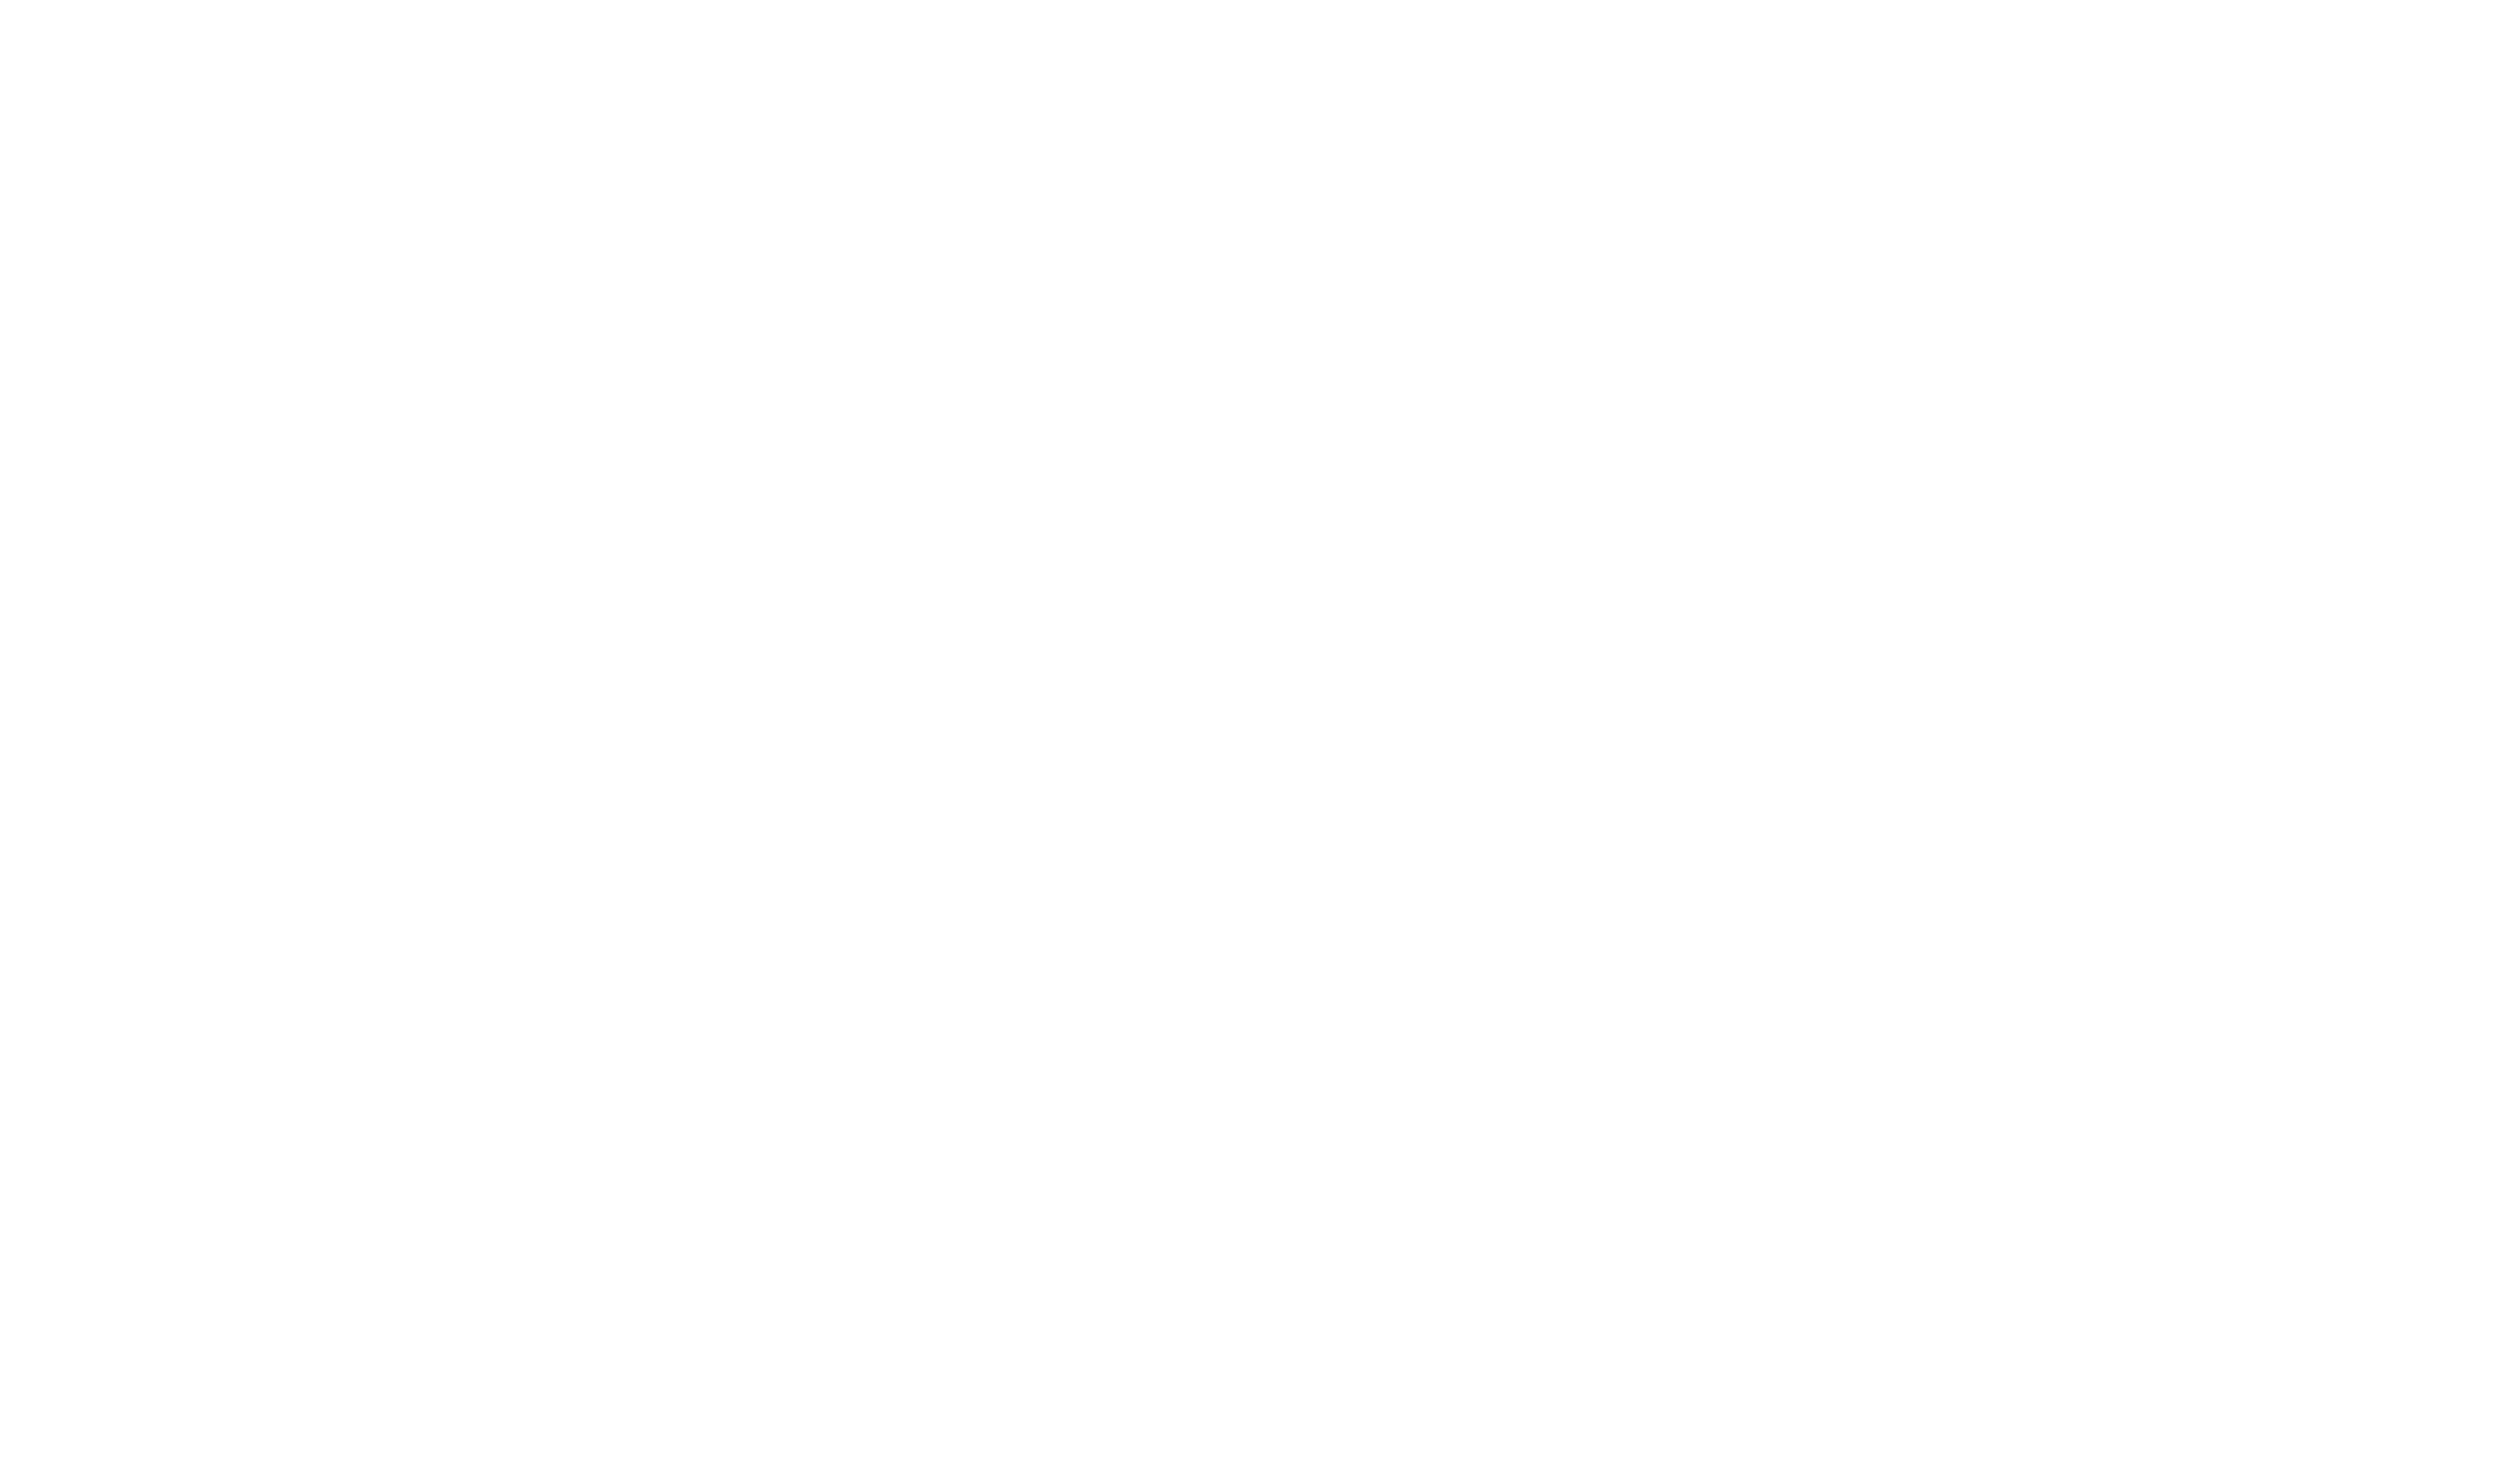 Holiday Matsuri Logo